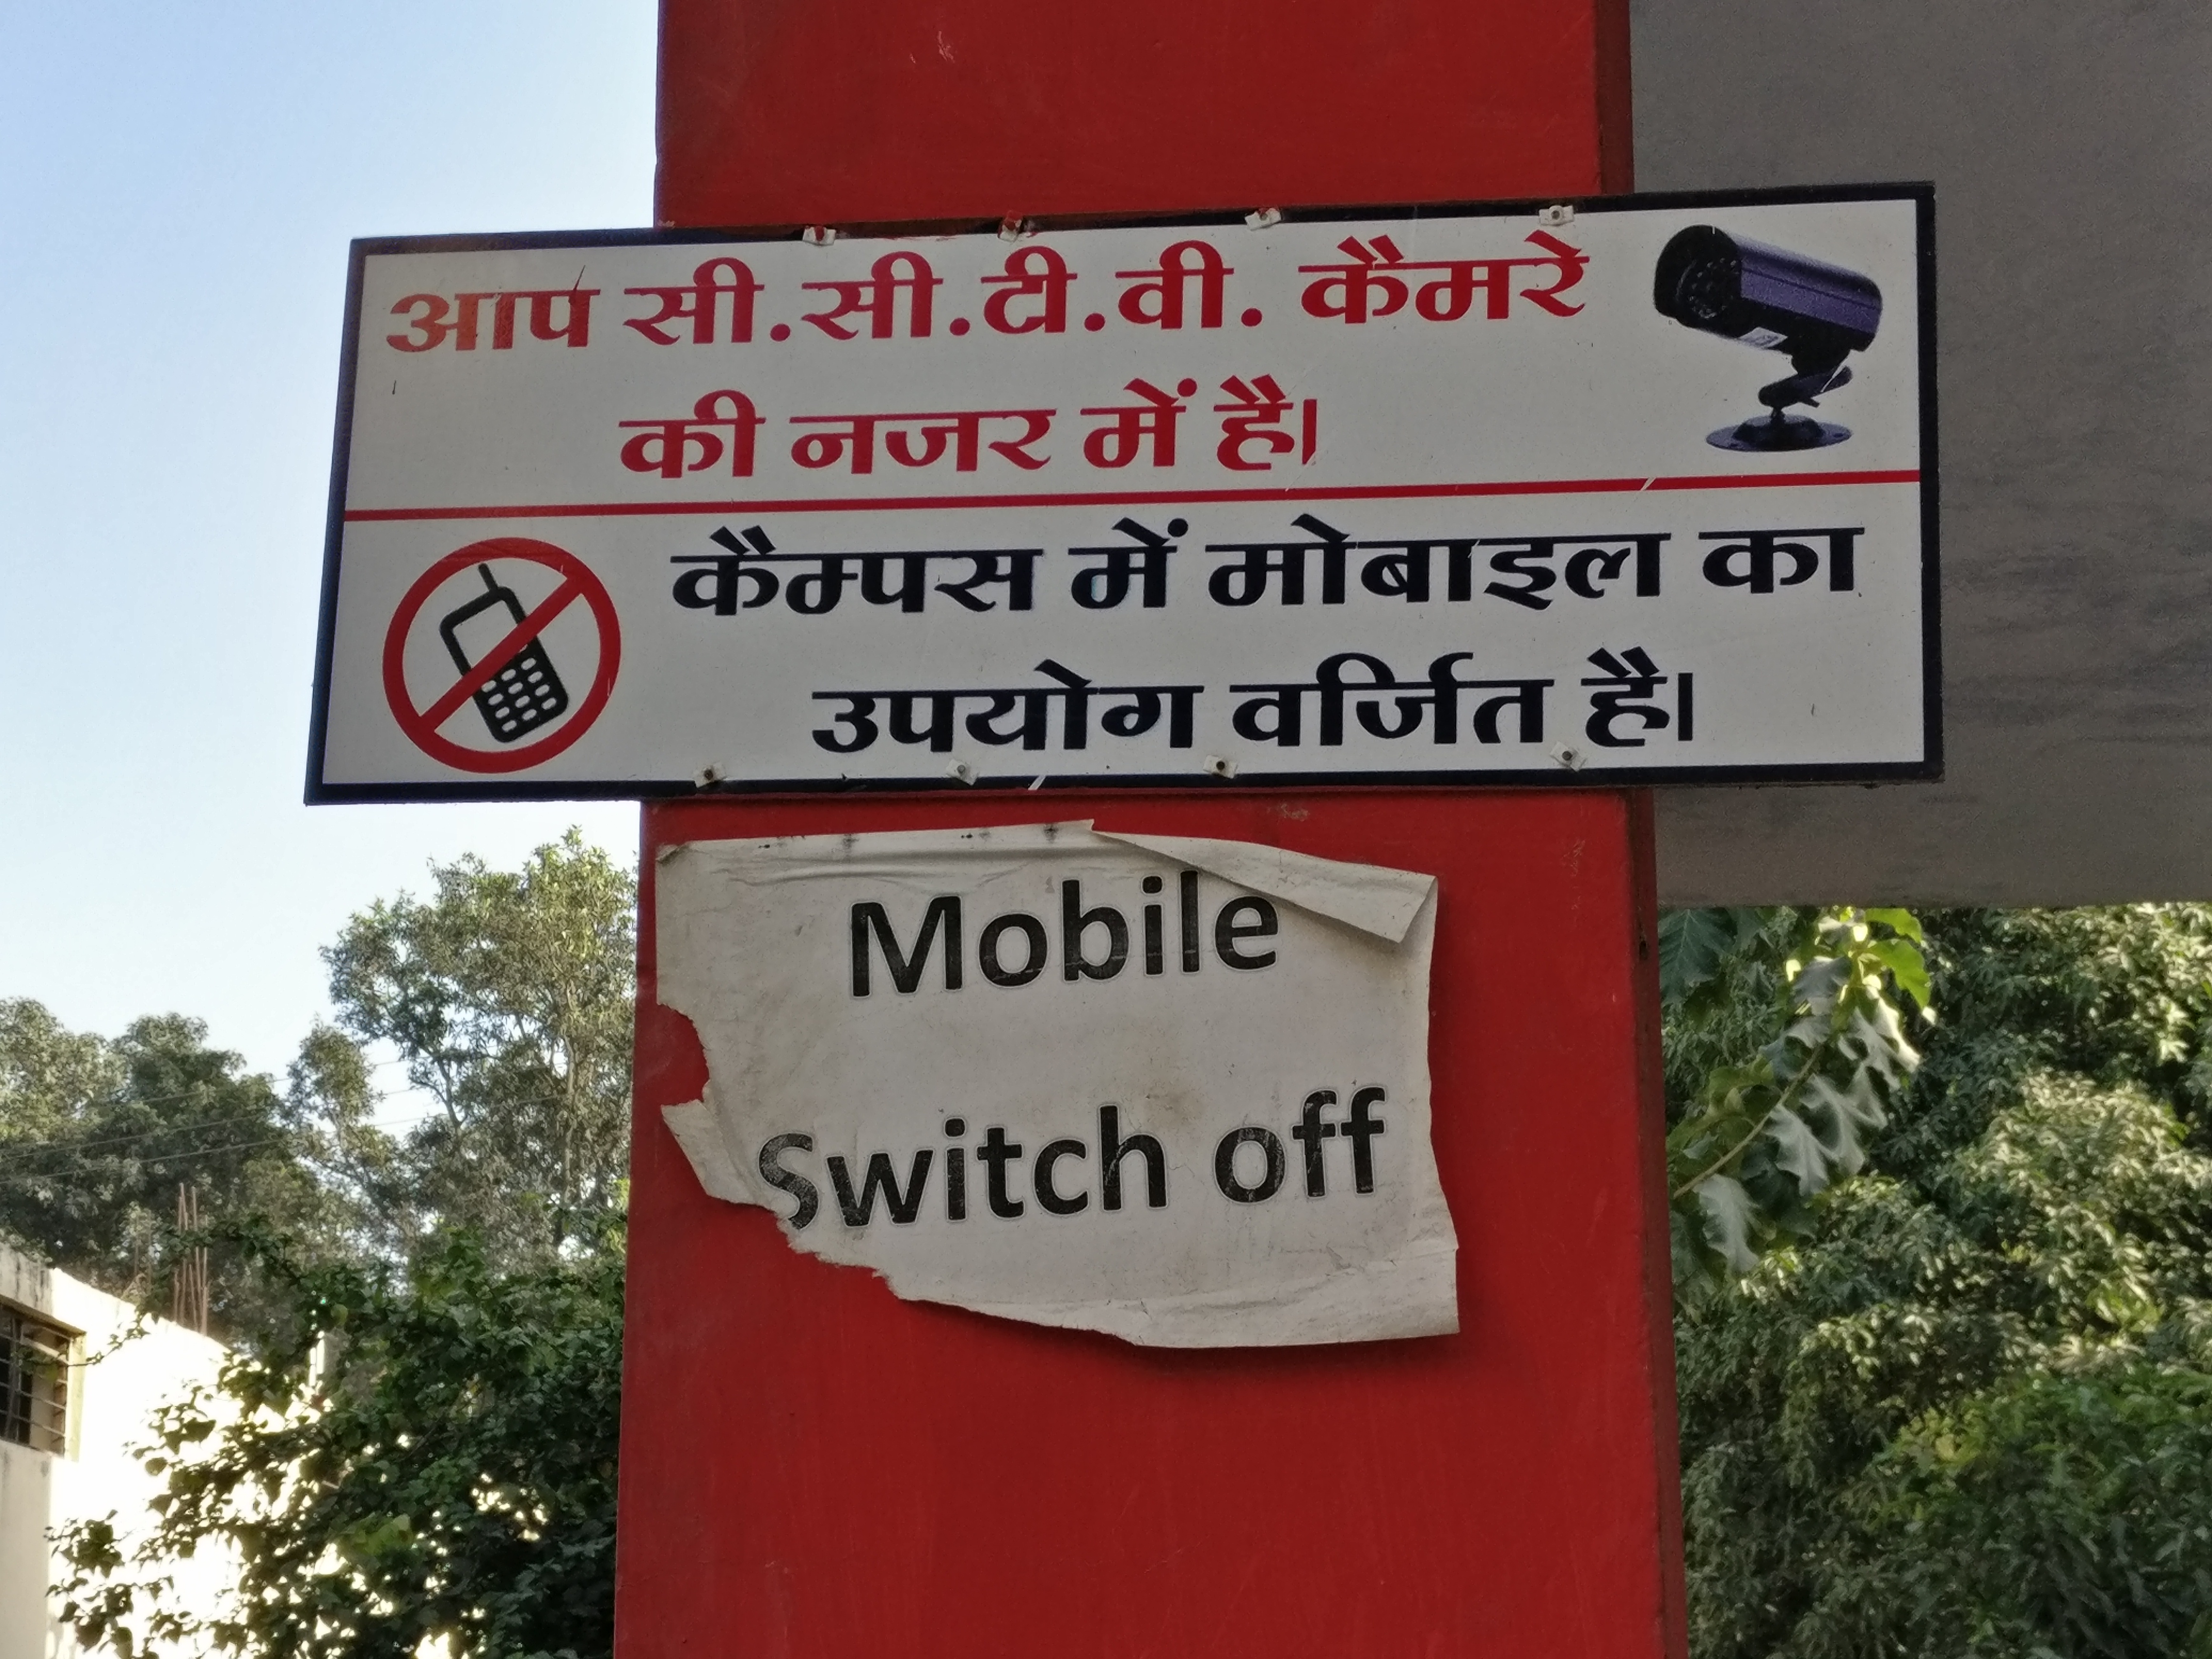 Chupke, Chupke': Going Behind the Mobile Phone Bans in North India